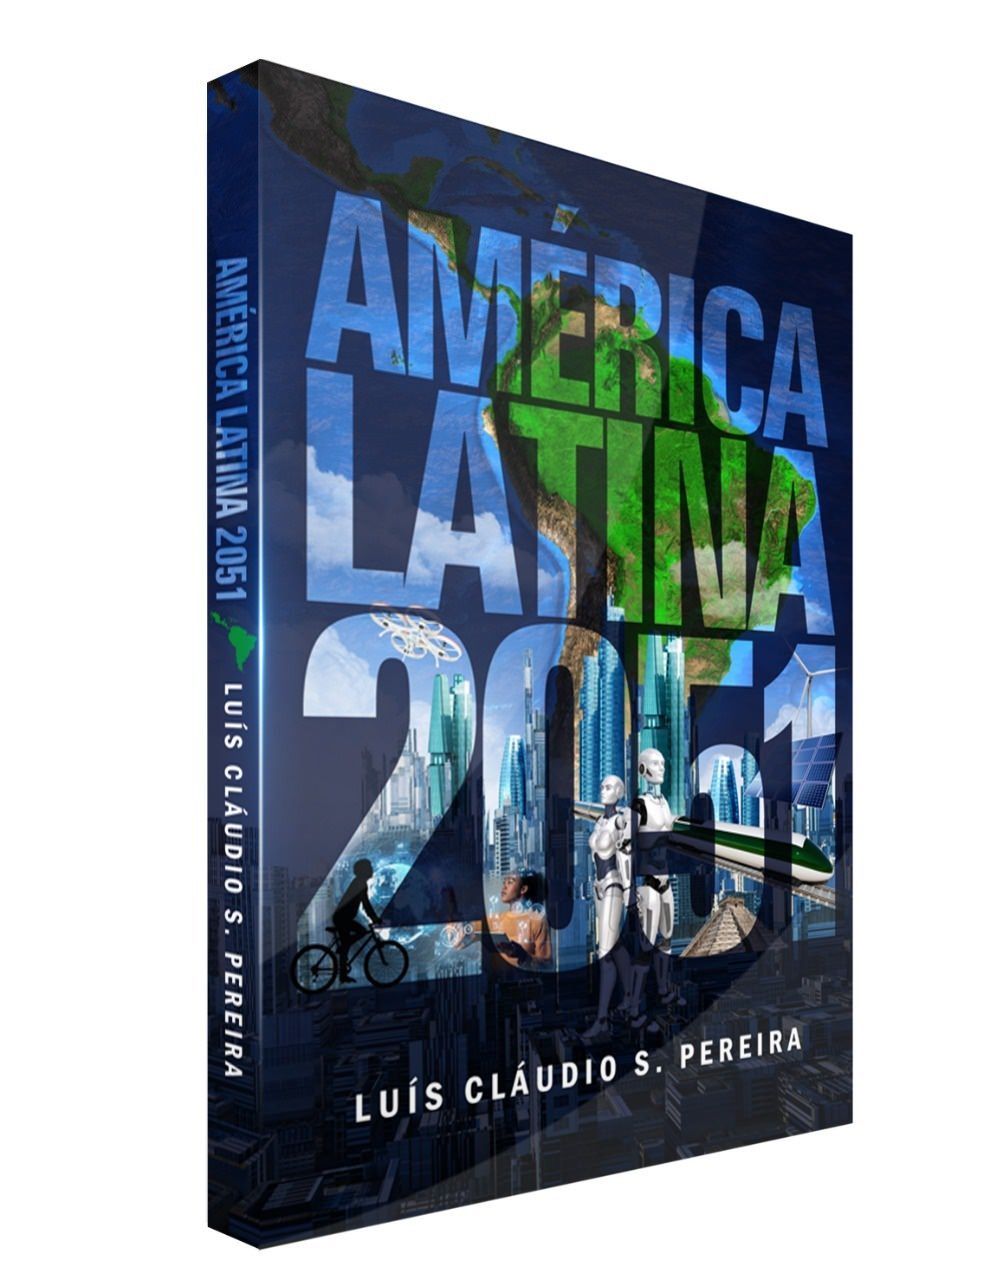 كتاب "أمريكا اللاتينية 2051" بواسطة Luís Cláudio S. كمثرى, غطاء. الكشف.